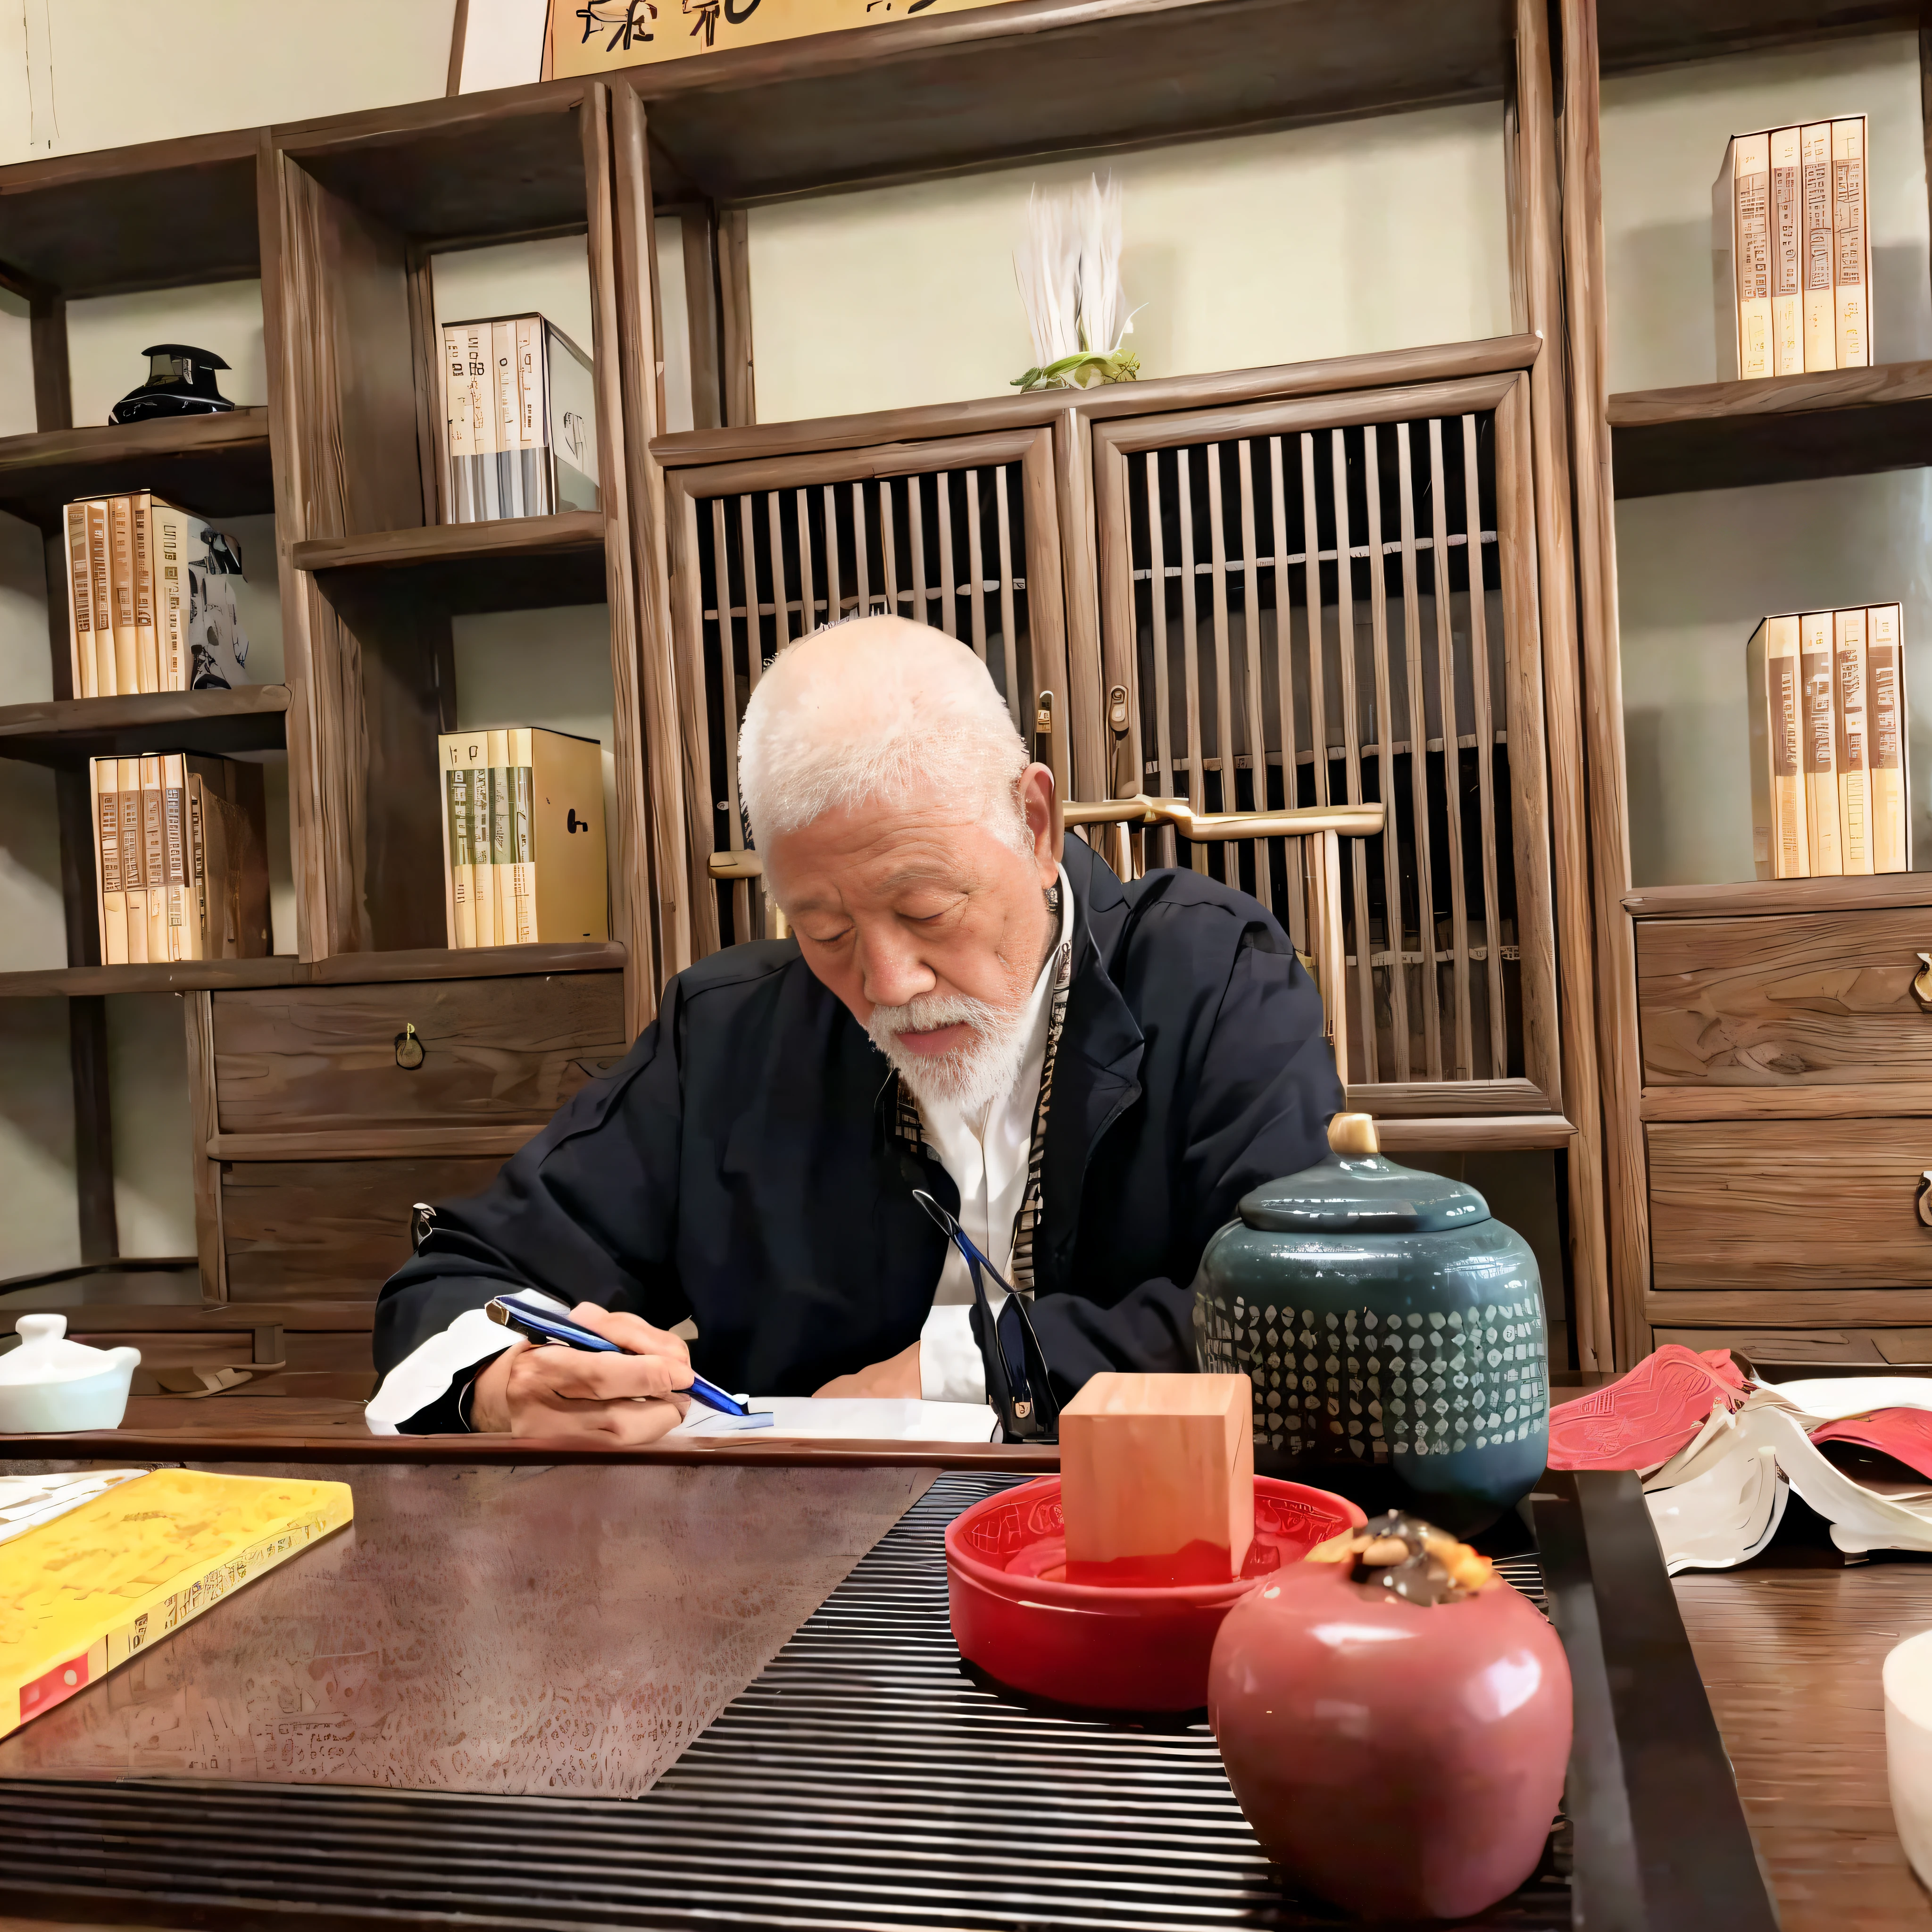 Había un hombre sentado en una mesa escribiendo un libro., inspirado en Sesshū Toyo, él tiene unos 8 0 años, Riichi Ueshiba, Chiba Yuda, inspirado en Itō Jakuchū, inspirado en Wu Daozi, inspirado en Kanō Tanshin